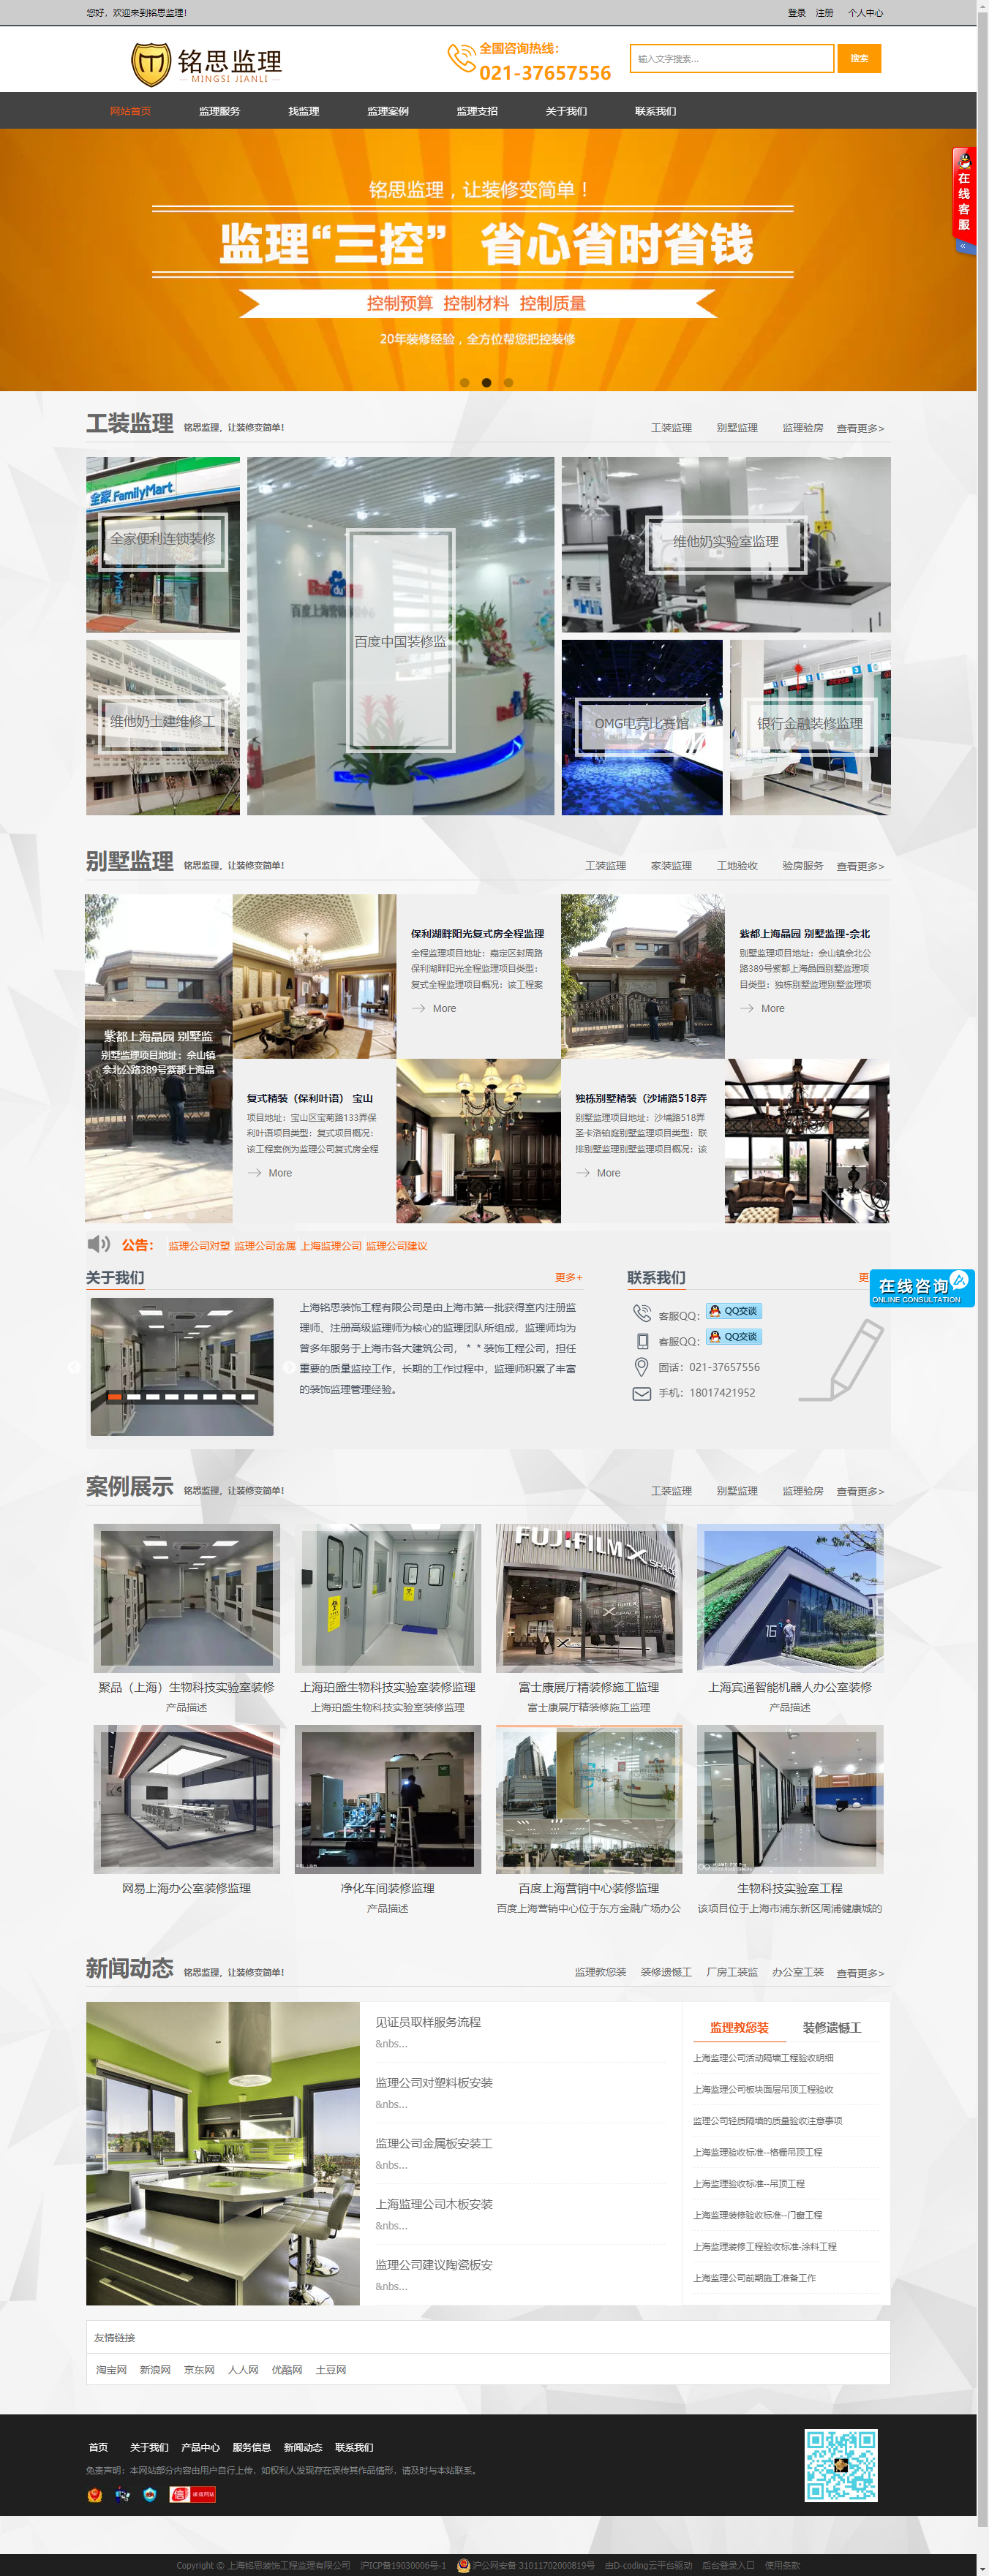 上海铭思装饰工程监理有限公司网站案例